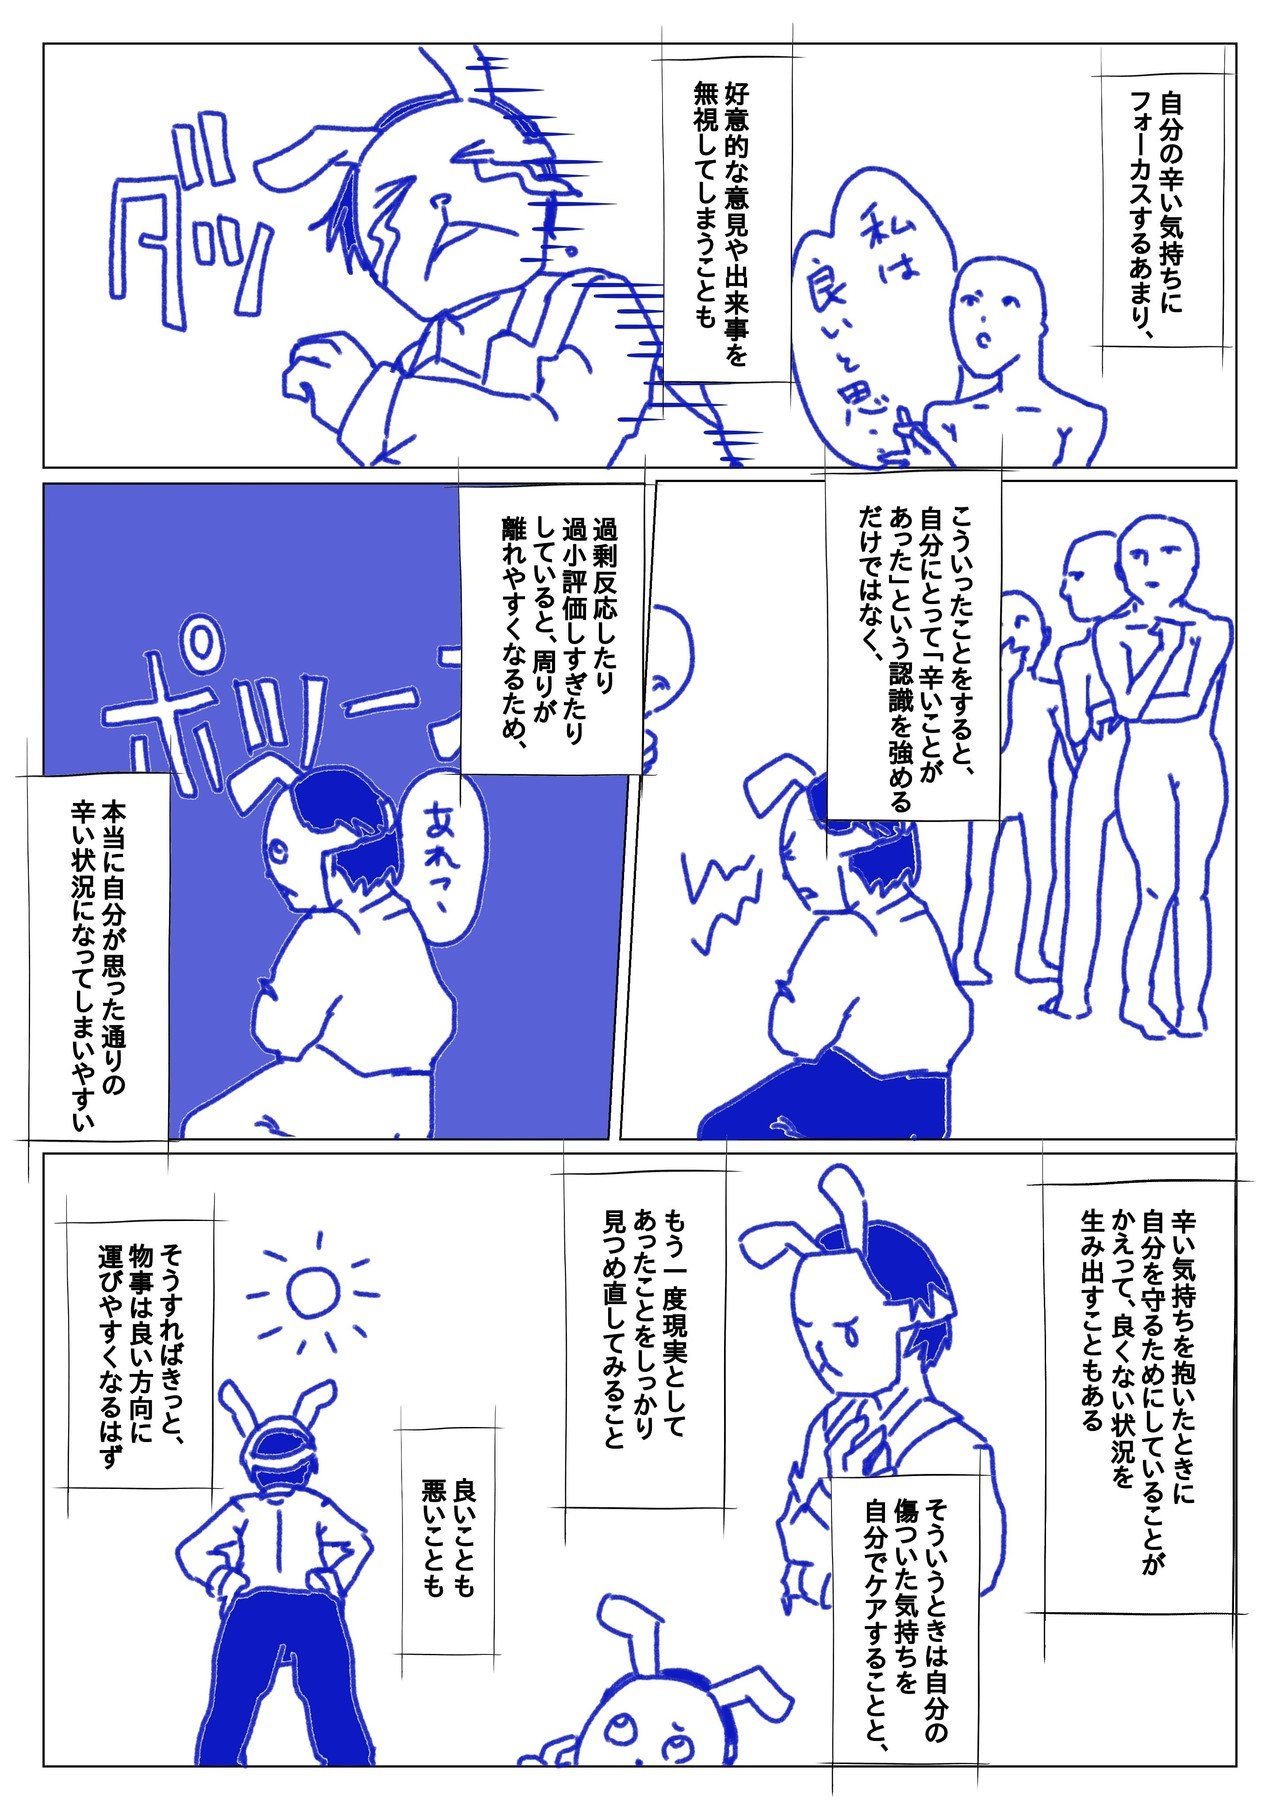 傷ついたときにしてはいけない たったひとつのこと Lay Toyama 遠山怜 作家のエージェント 漫画 Note